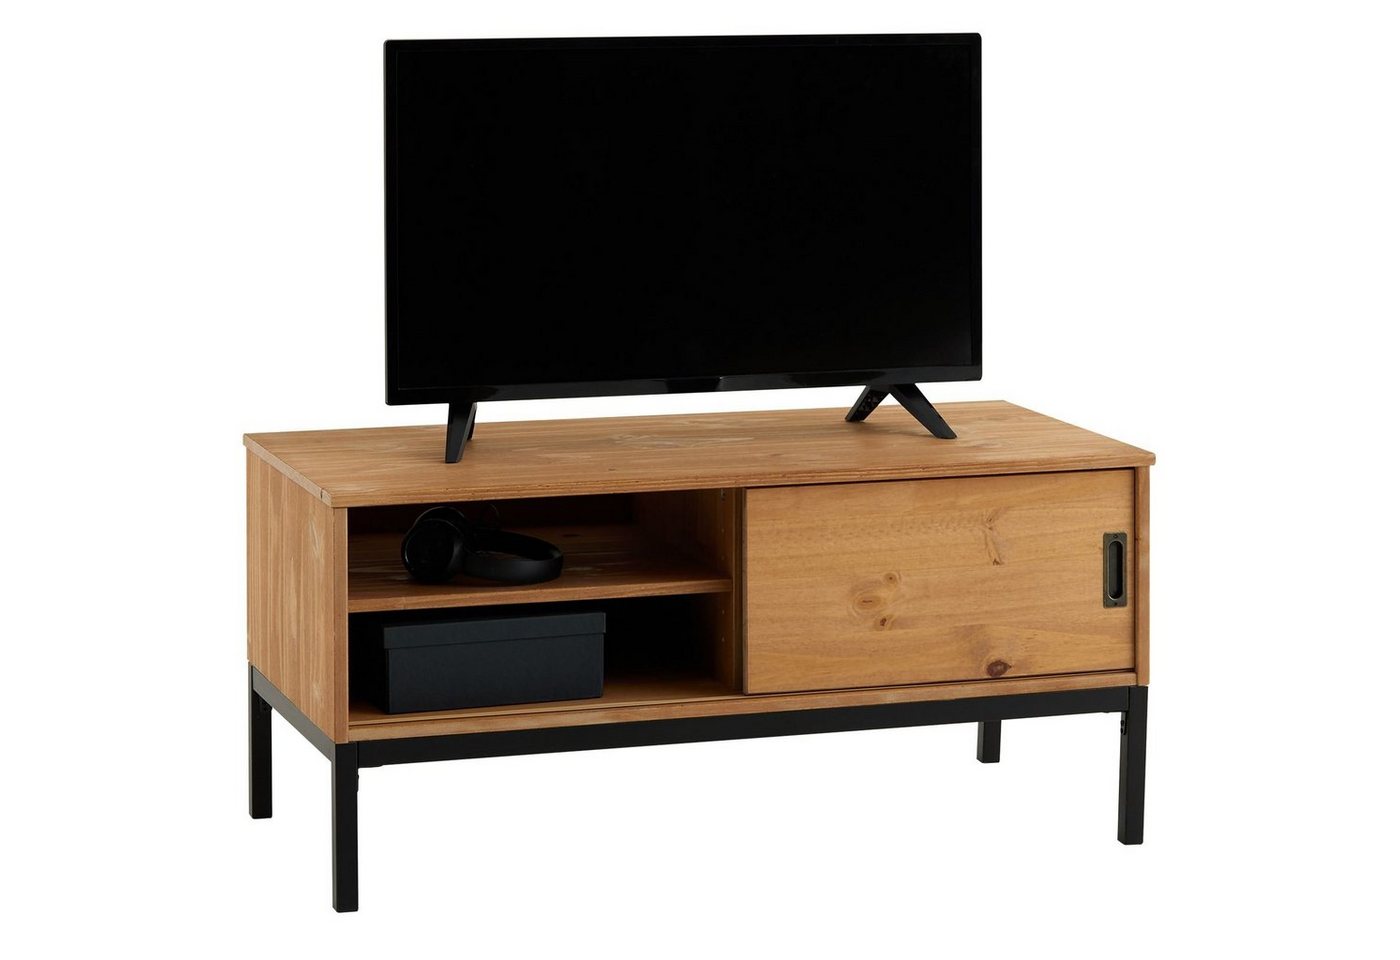 IDIMEX Lowboard SELMA, Lowboard Fernsehtisch TV Möbel Tisch Schrank 1 Tür Industrial Design h von IDIMEX